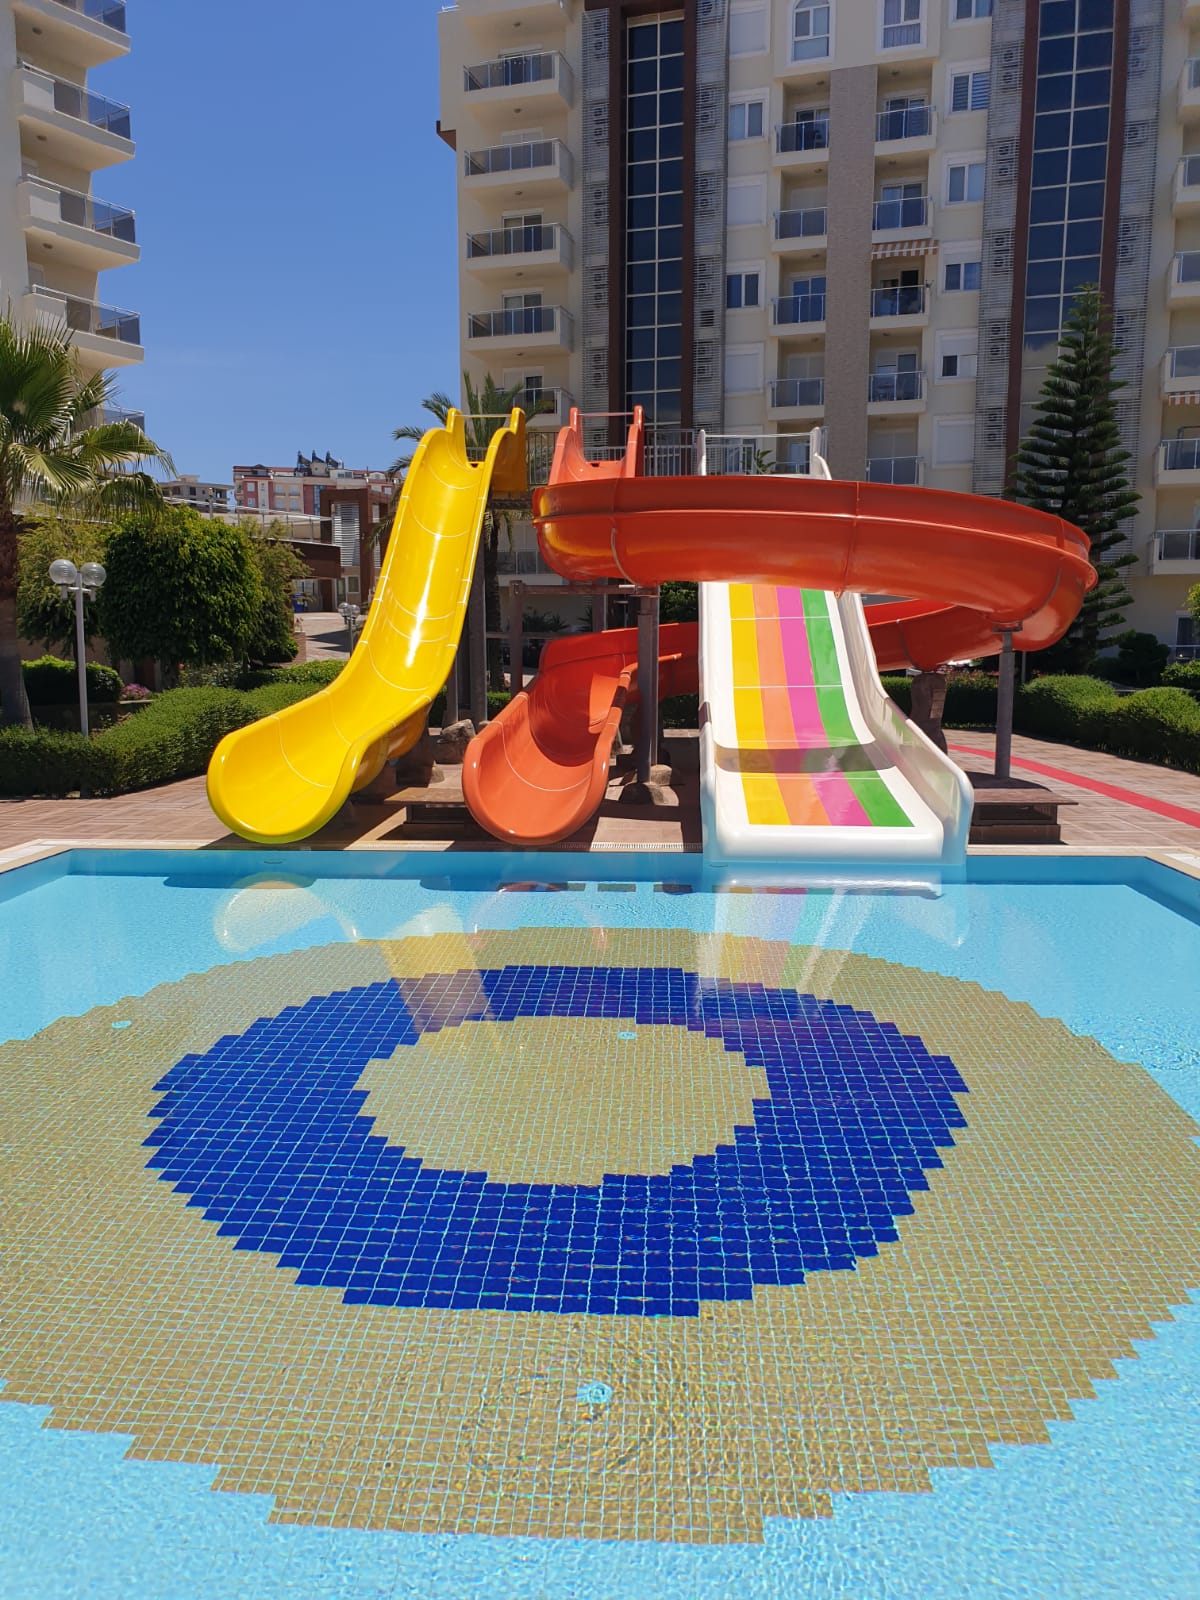 Die Oberfläche der Wasserrutschen im großen pool wurde renoviert und neu gestrichen